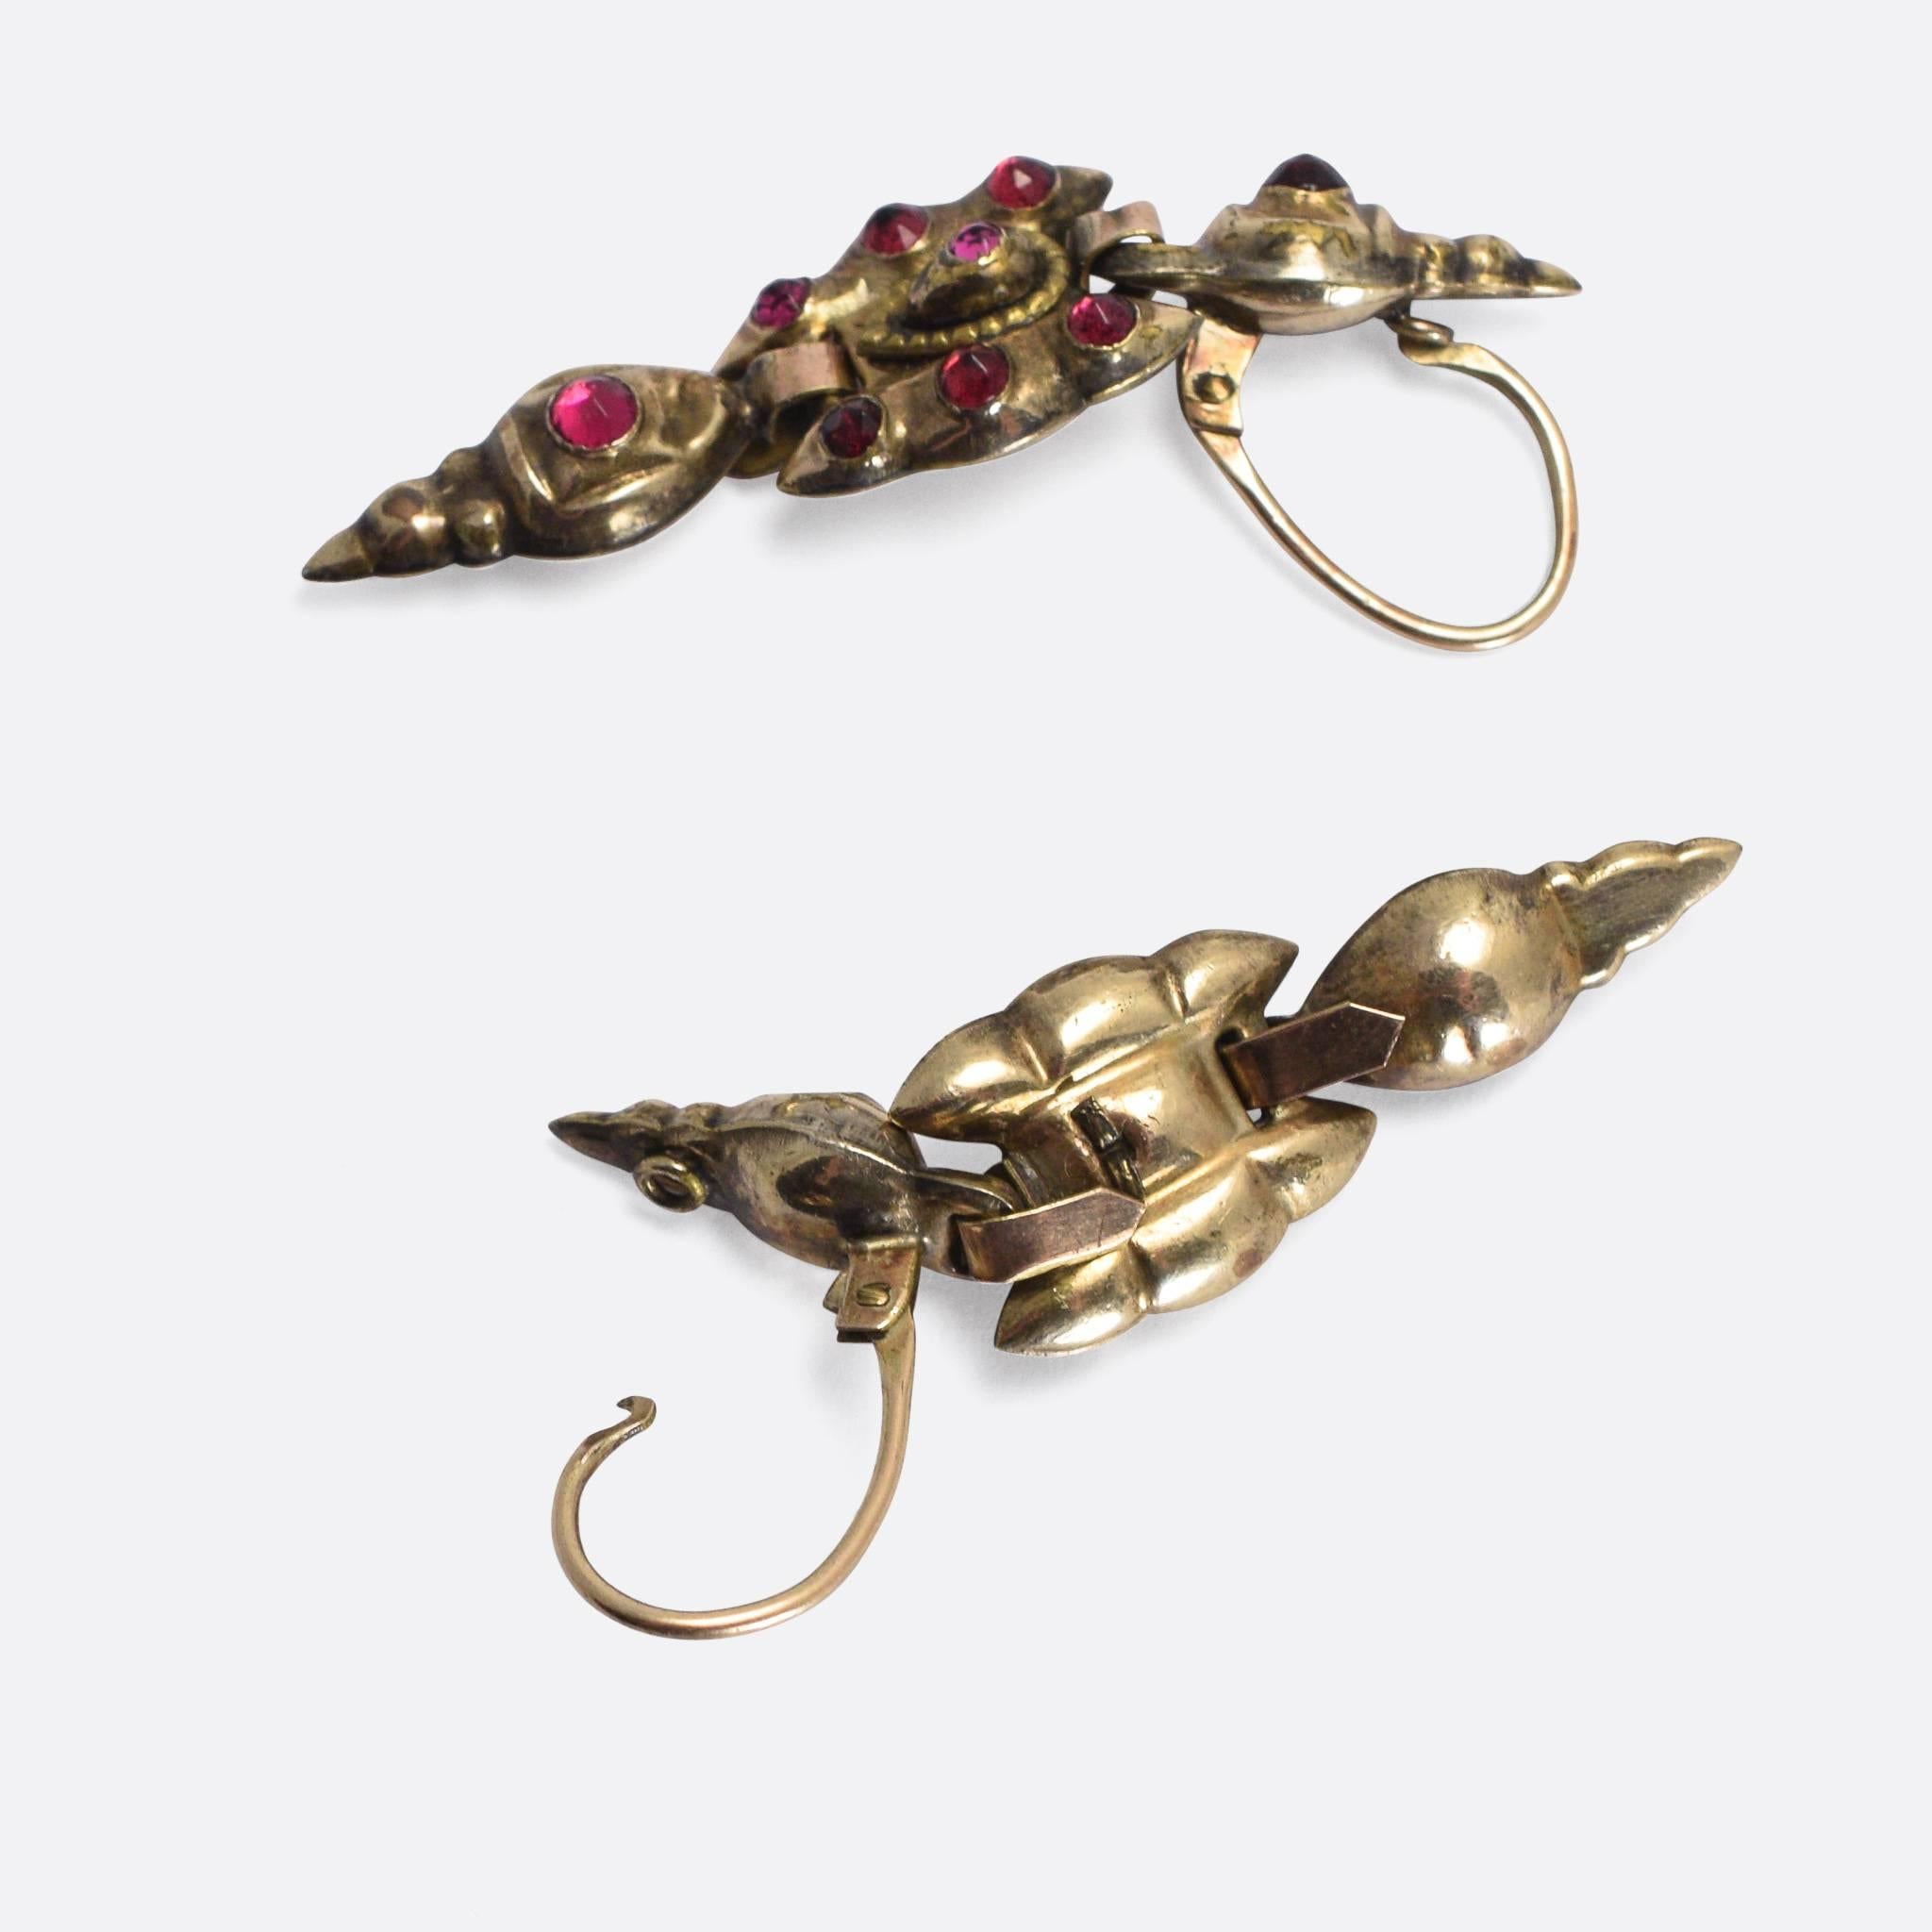 1700s earrings